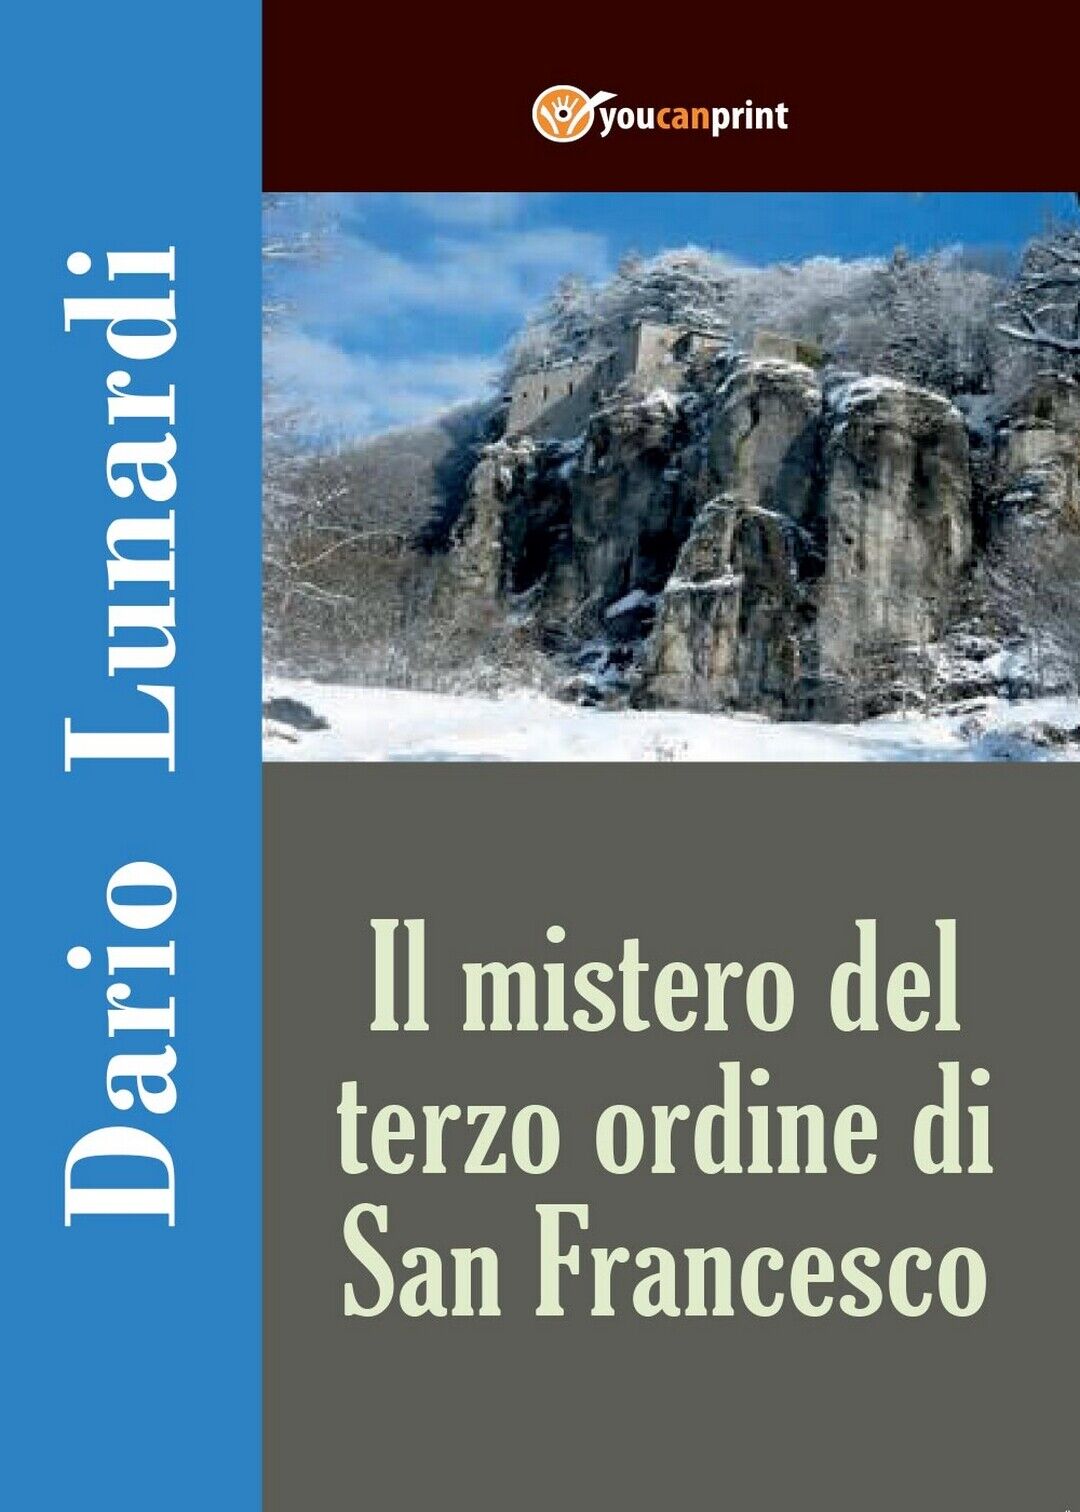 Il mistero del terzo ordine di San Francesco, Dario Lunardi,  2016,  Youcanprint